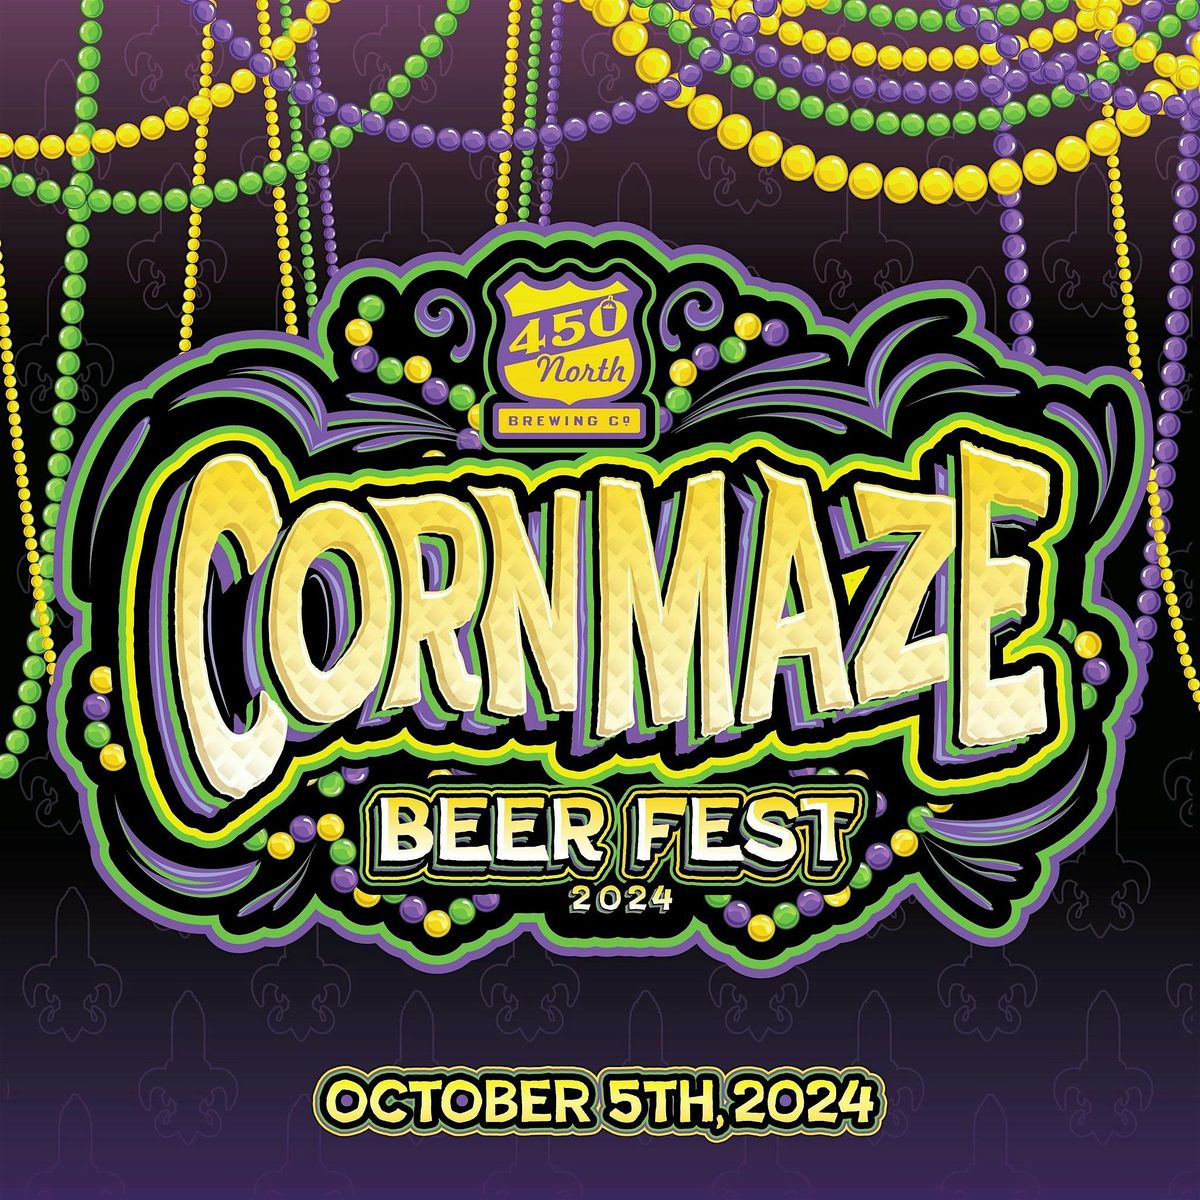 Corn Maze Beer Fest 2024